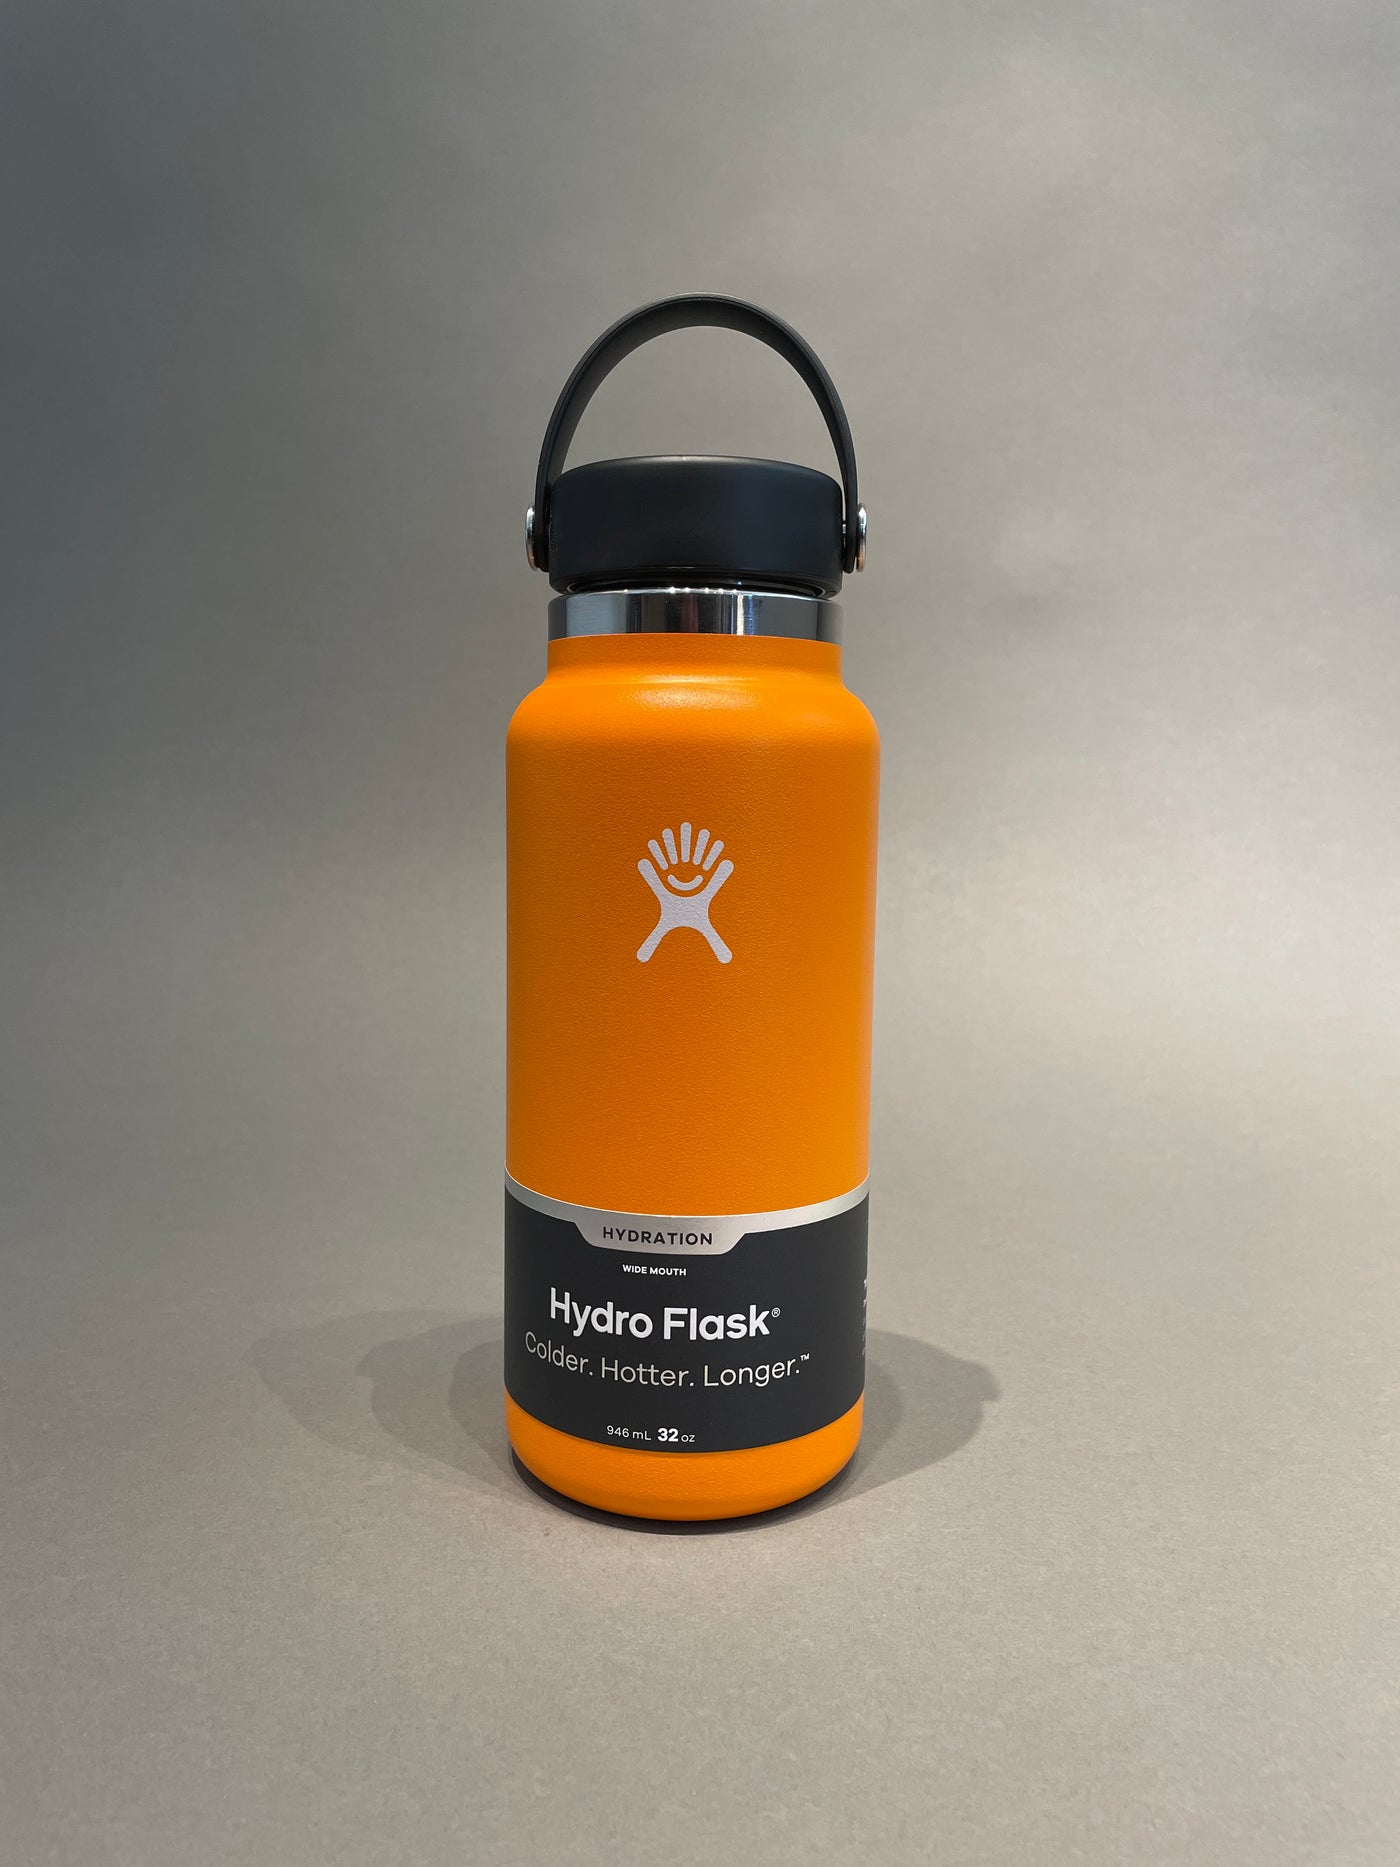 10 Best Hydro Flasks 2020 